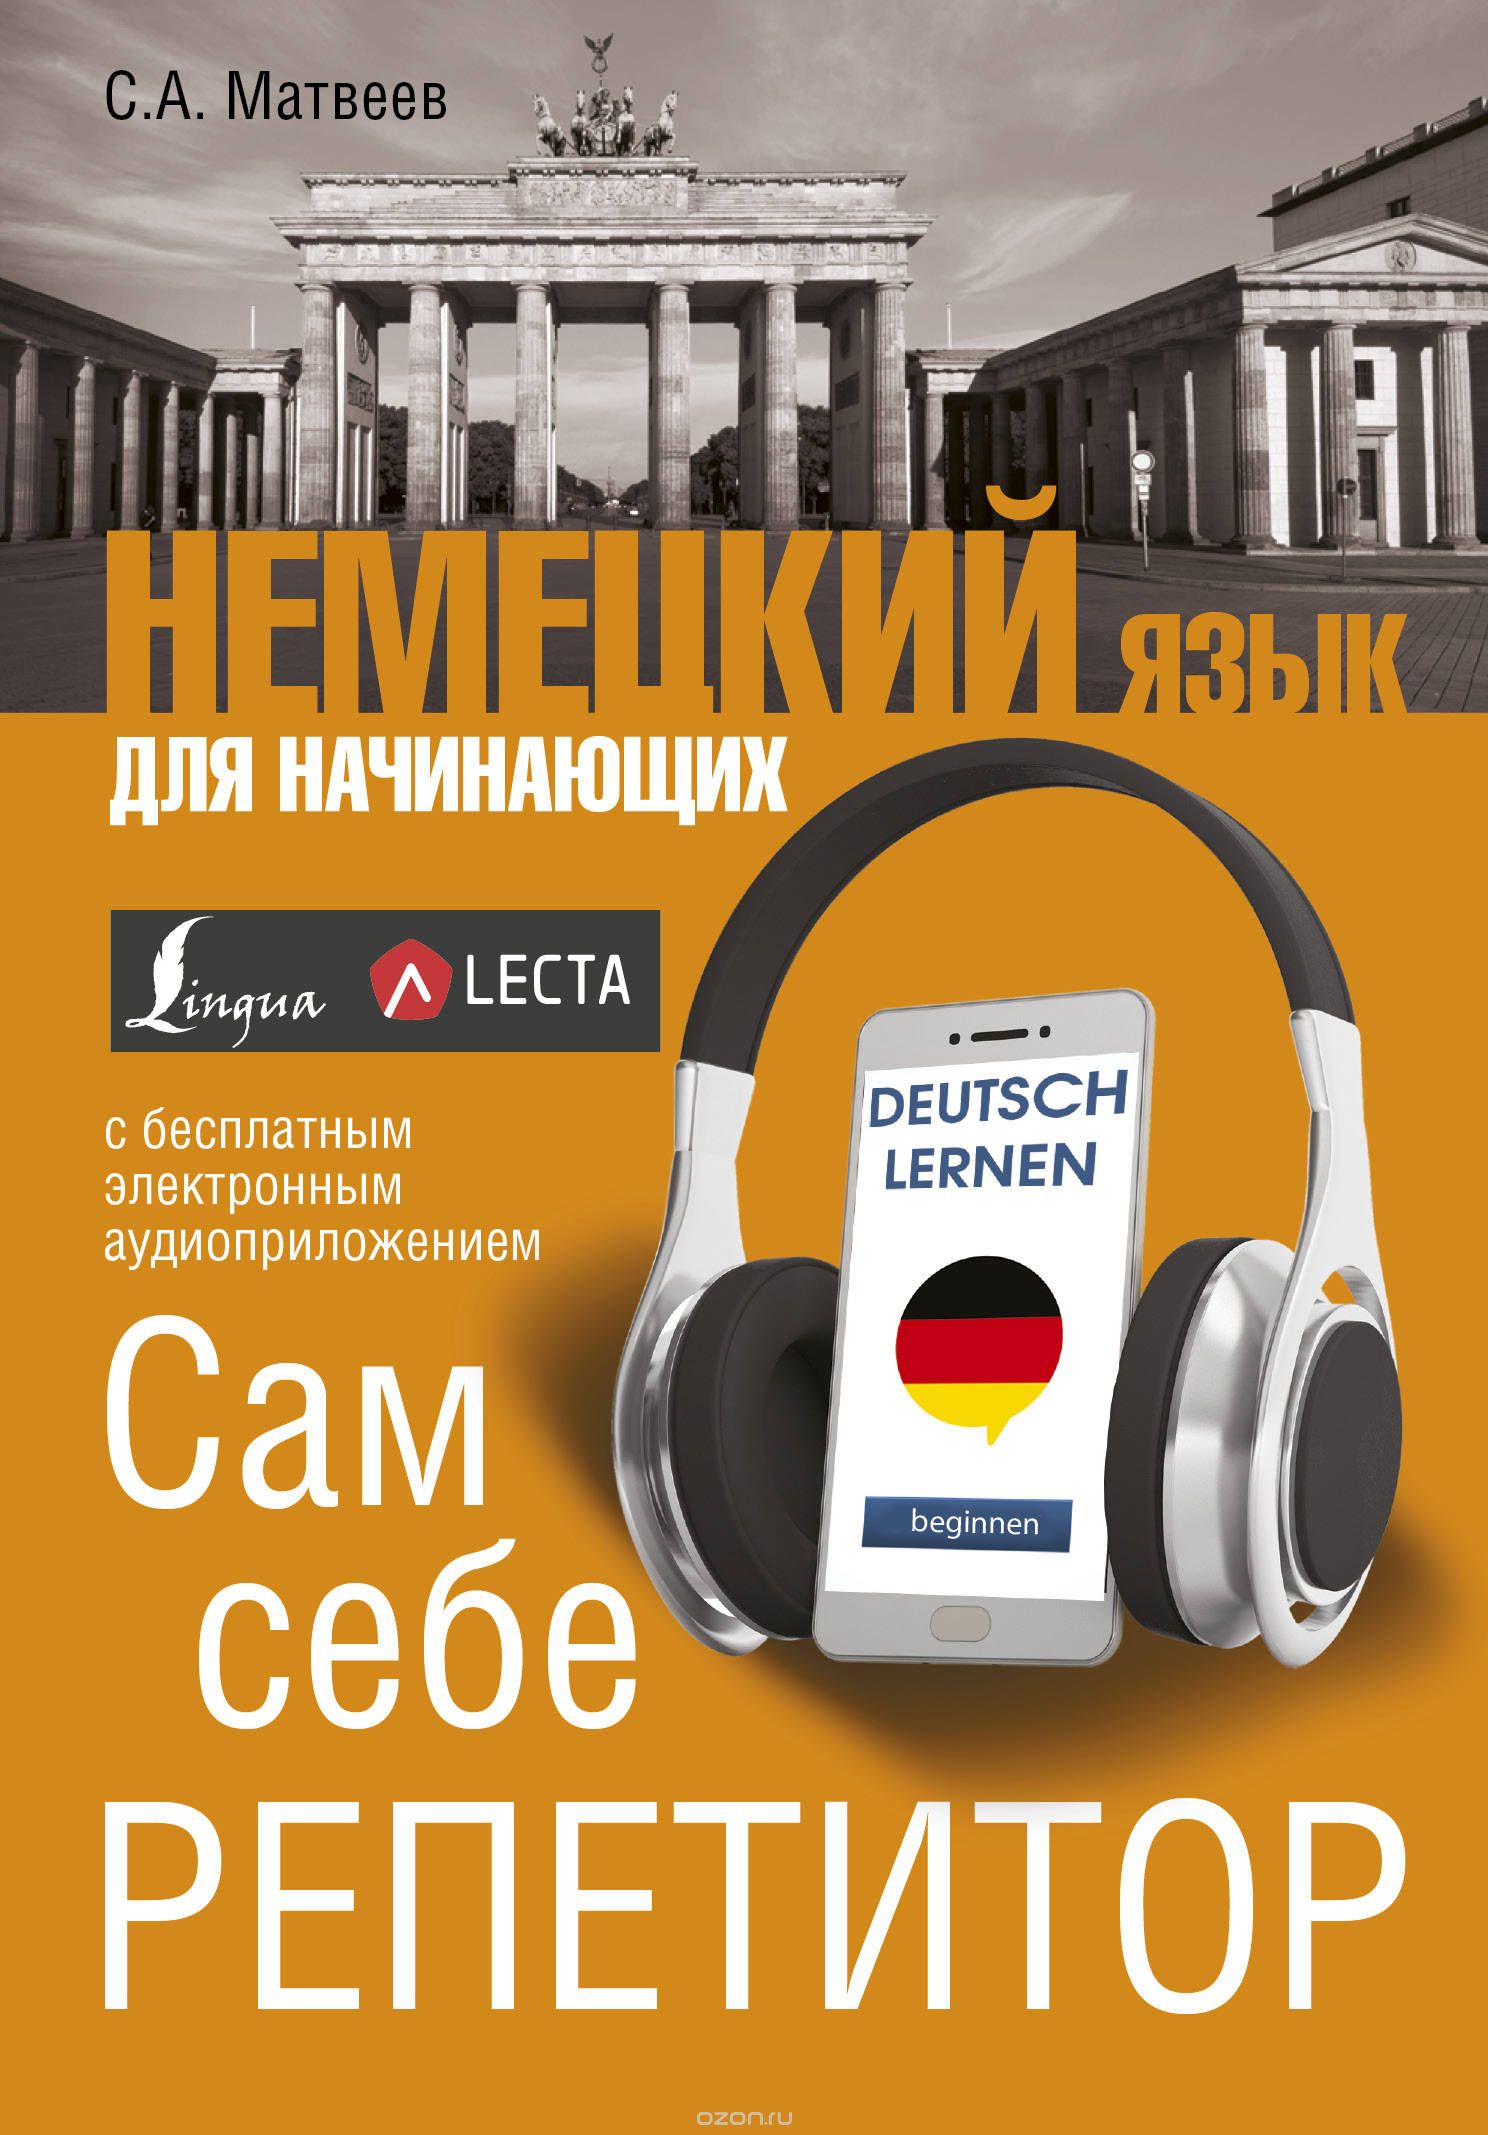 Скачать книгу "Немецкий язык для начинающих. Сам себе репетитор + LECTA, С. А. Матвеев"